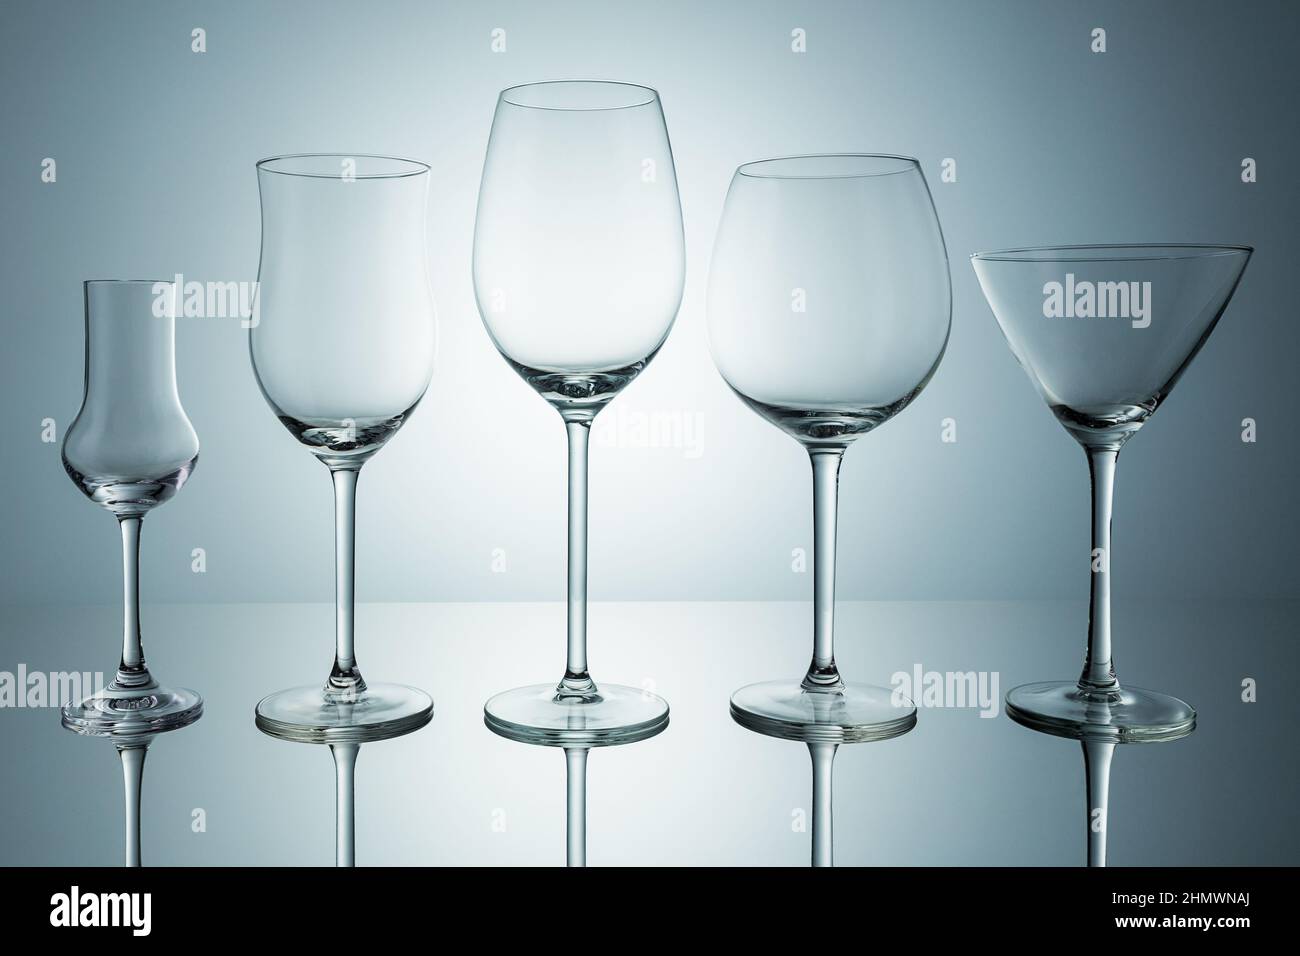 Une rangée de verres de grappa, de vin et de cocktail vides sur fond gris. Prise en Studio avec un 5D Mark III Banque D'Images